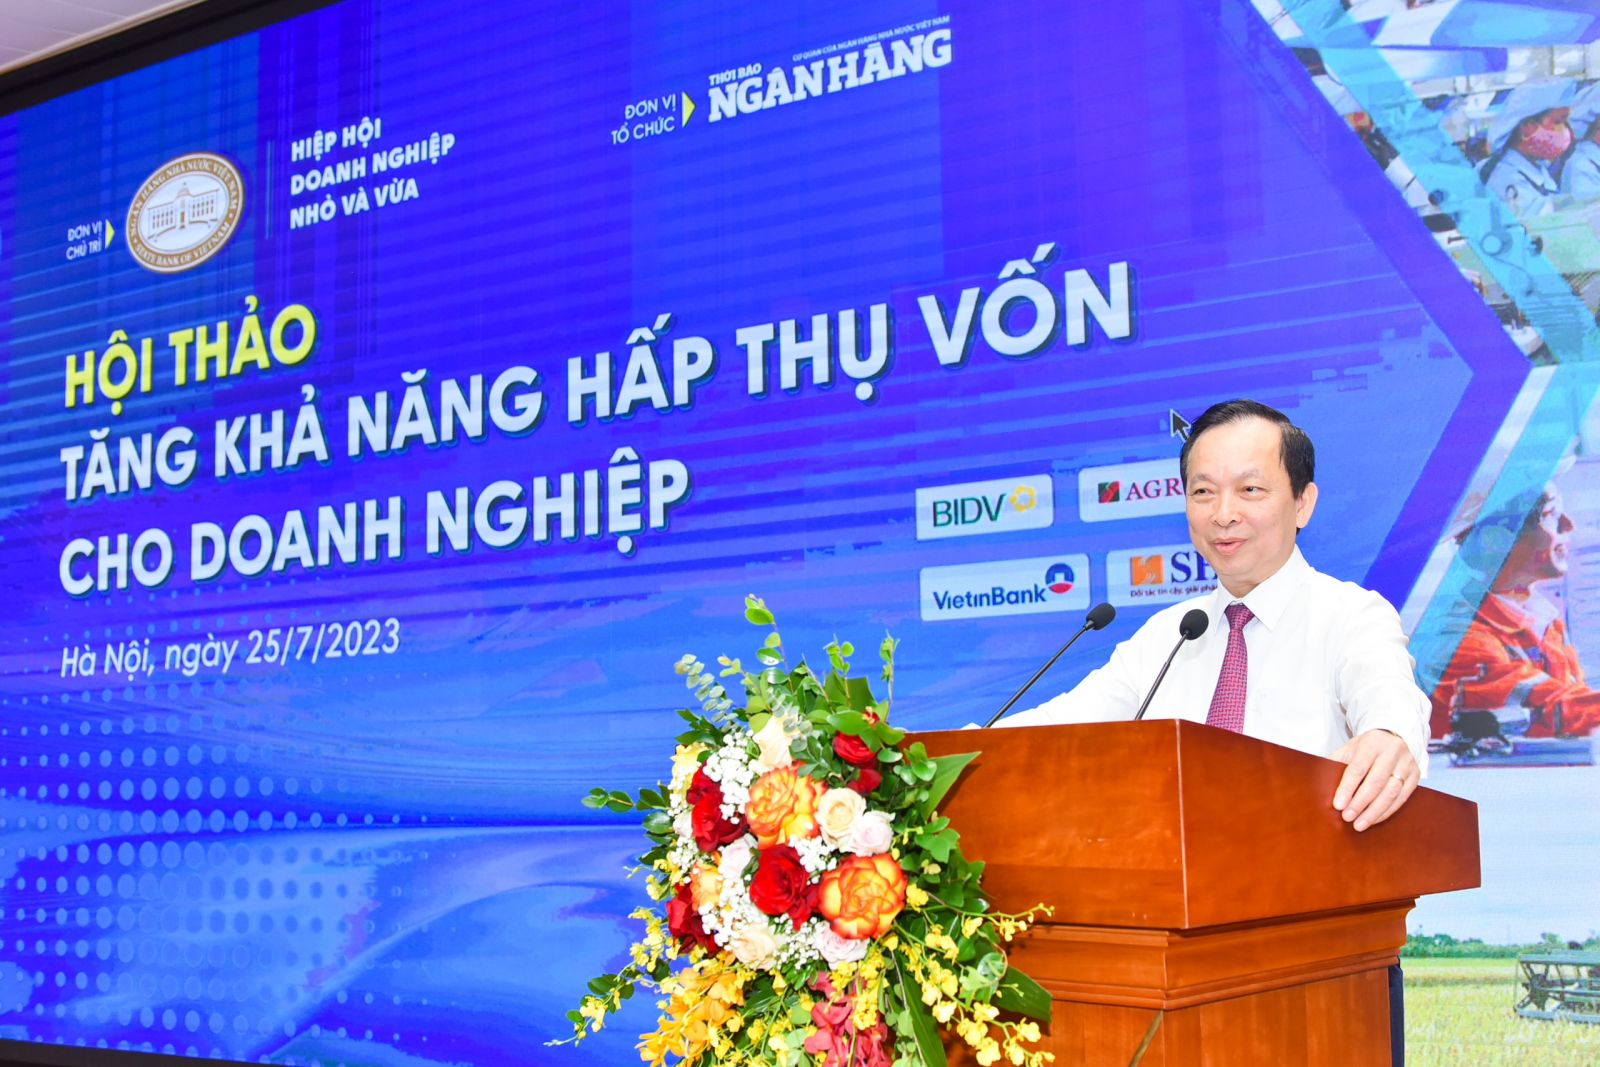 Phó Thống đốc Thường trực Ngân hàng Nhà nước Đào Minh Tú phát biểu tại hội thảo